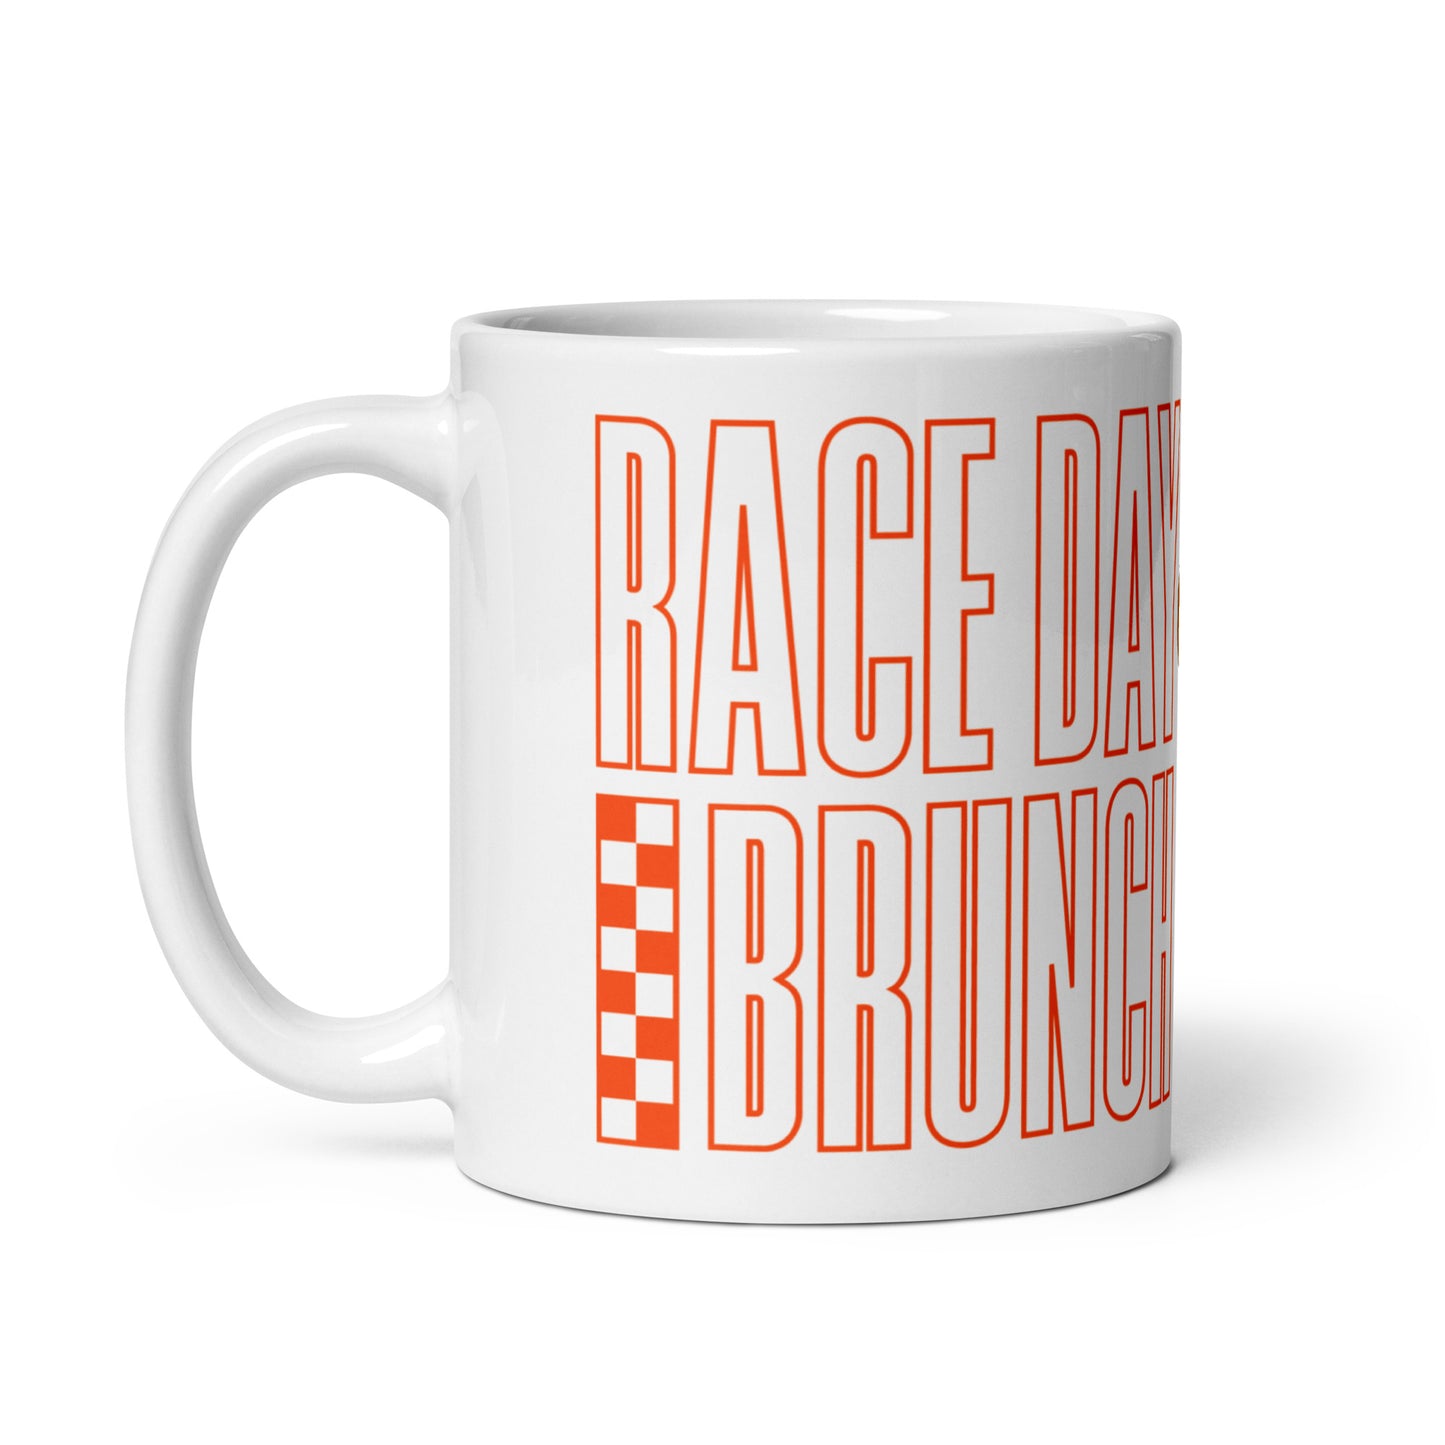 Brunch Club mug